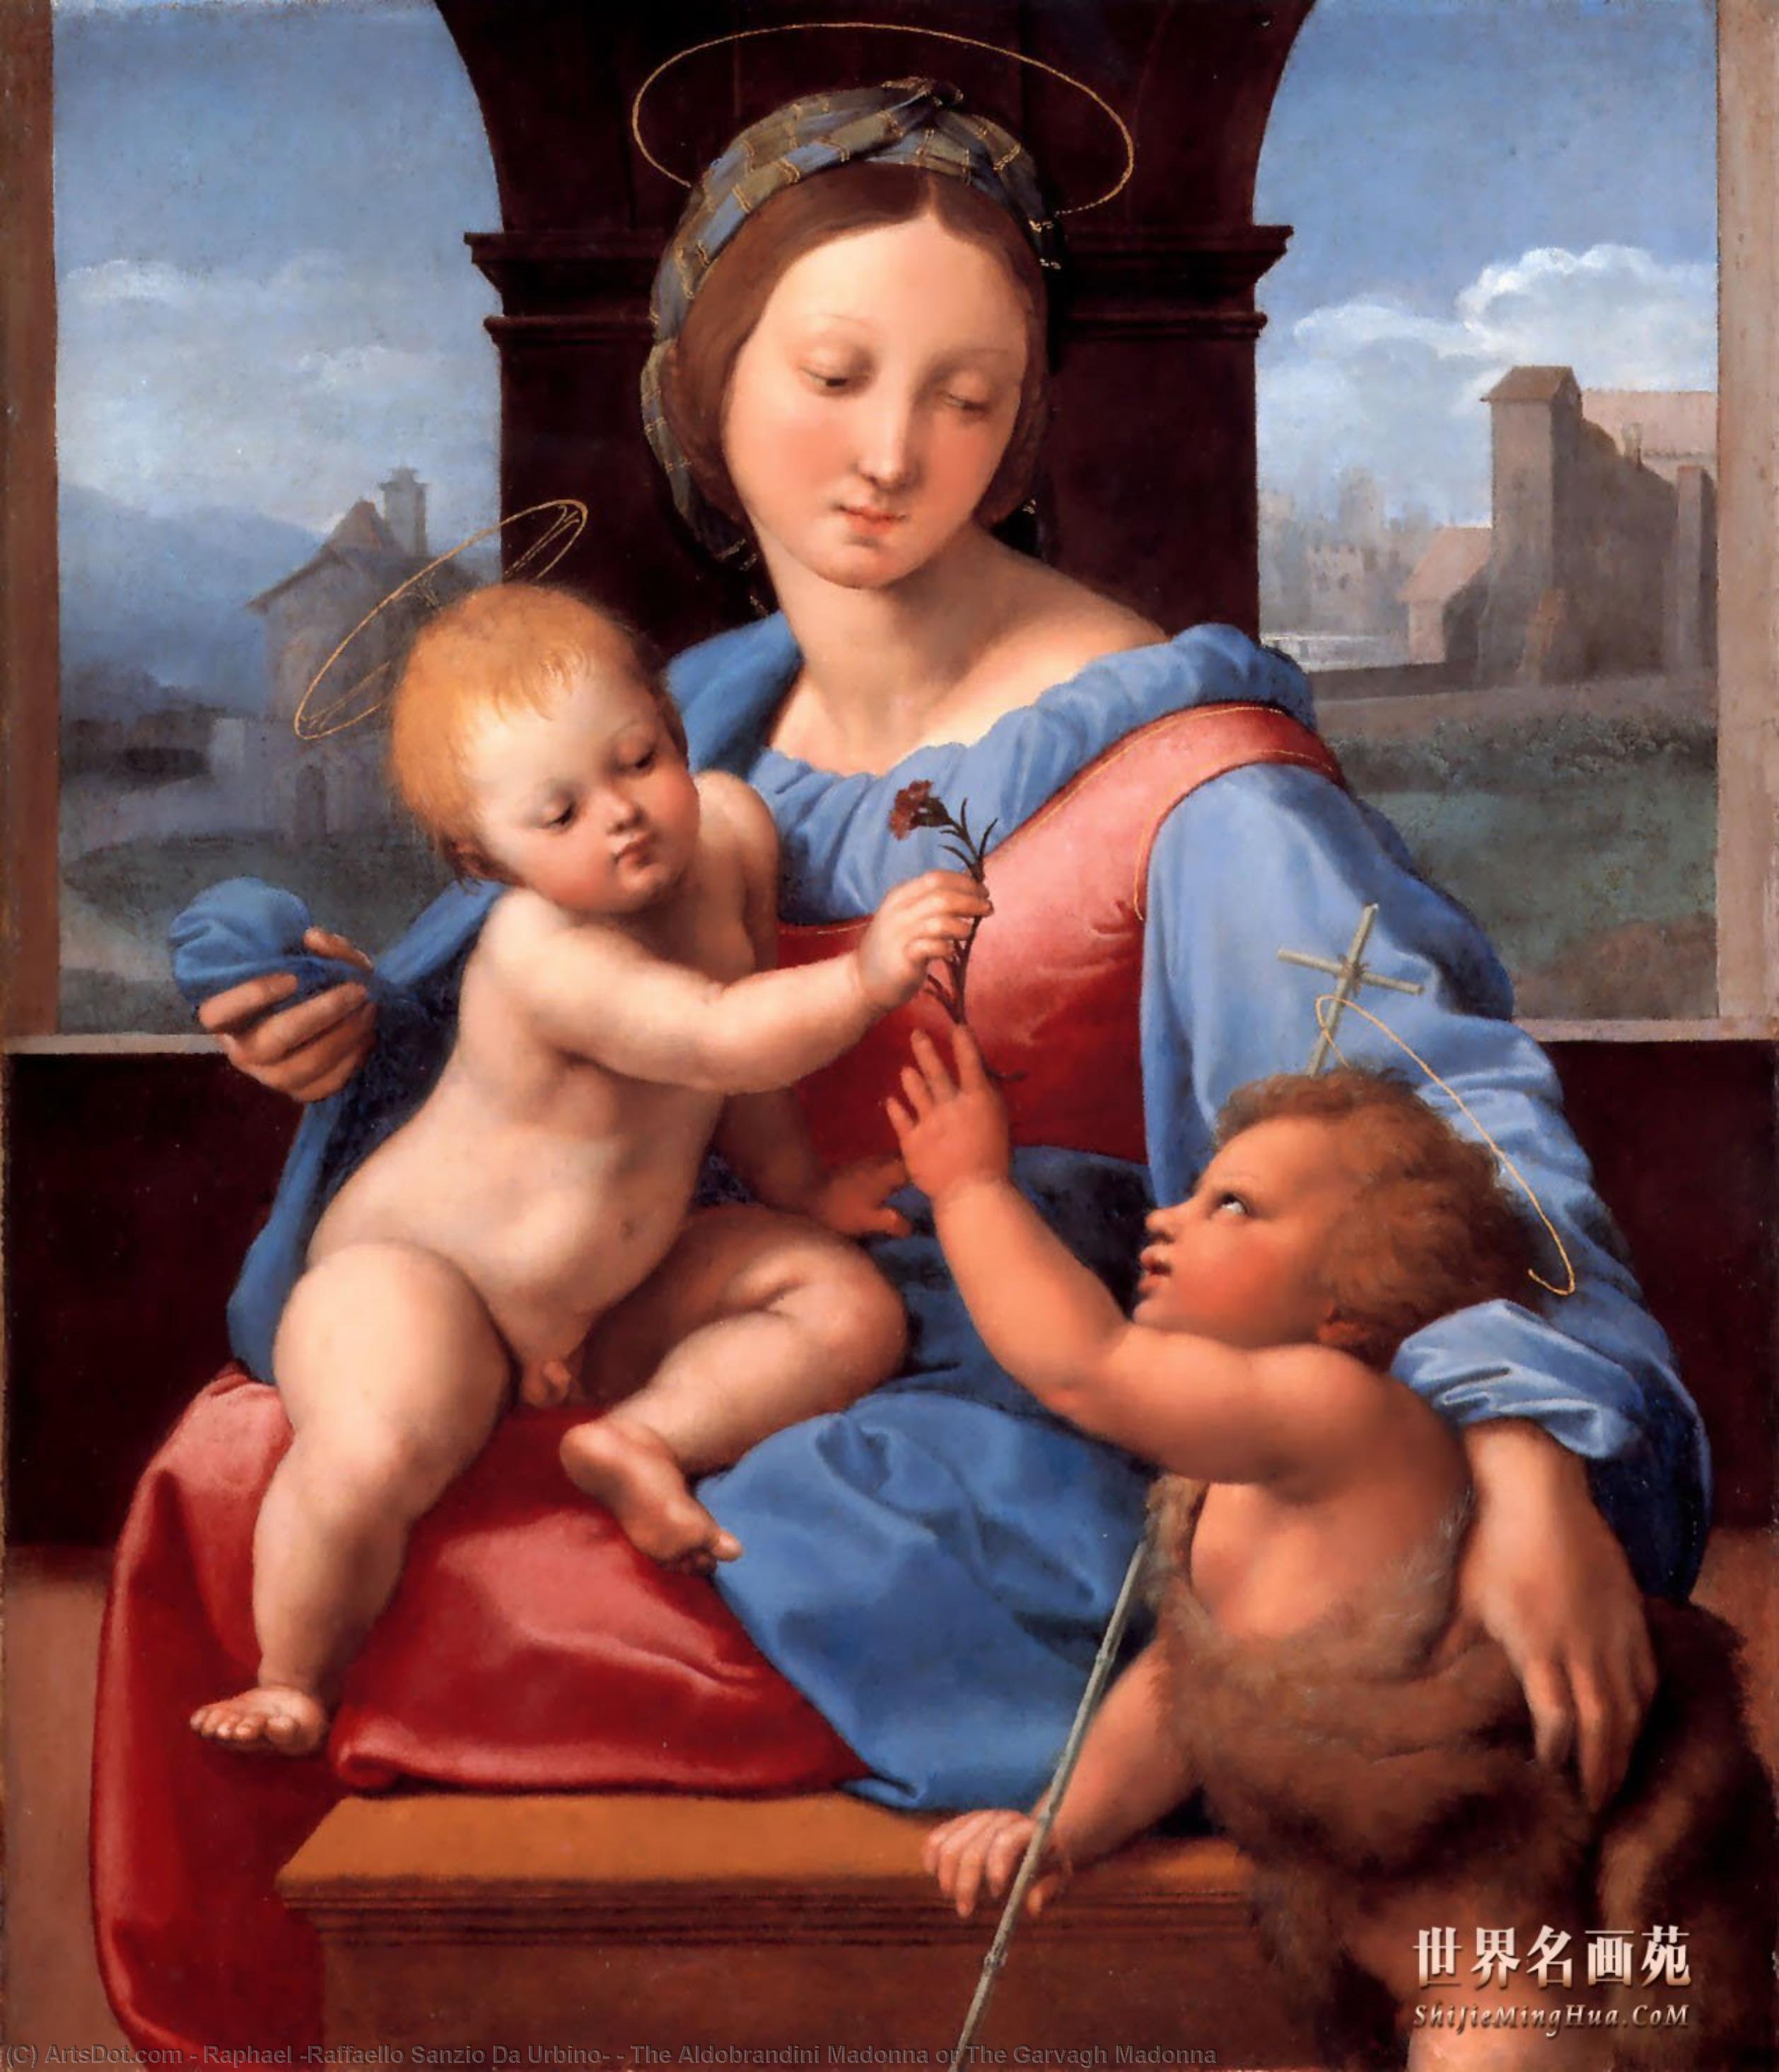 WikiOO.org - Encyclopedia of Fine Arts - Maleri, Artwork Raphael (Raffaello Sanzio Da Urbino) - The Aldobrandini Madonna or The Garvagh Madonna